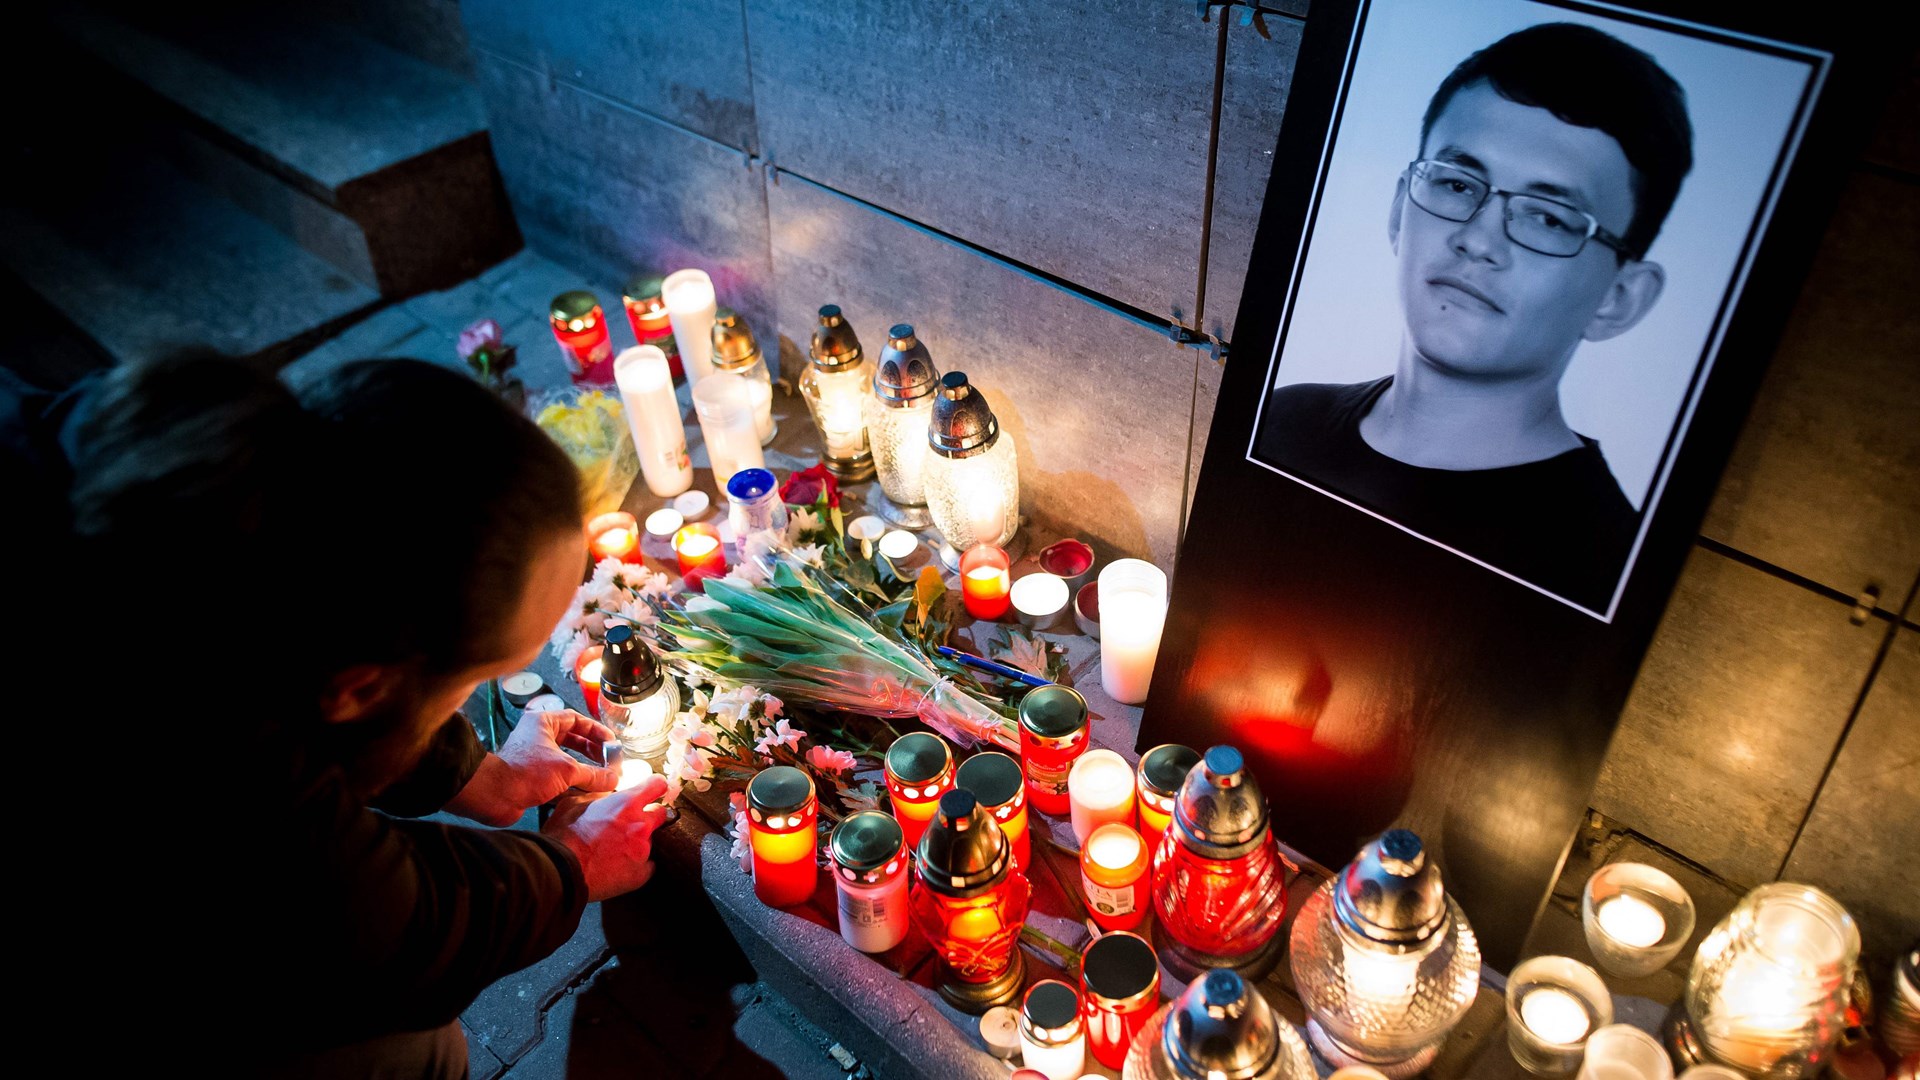 Συμβόλαιο θανάτου η δολοφονία του Σλοβάκου δημοσιογράφου σύμφωνα με εισαγγελέα